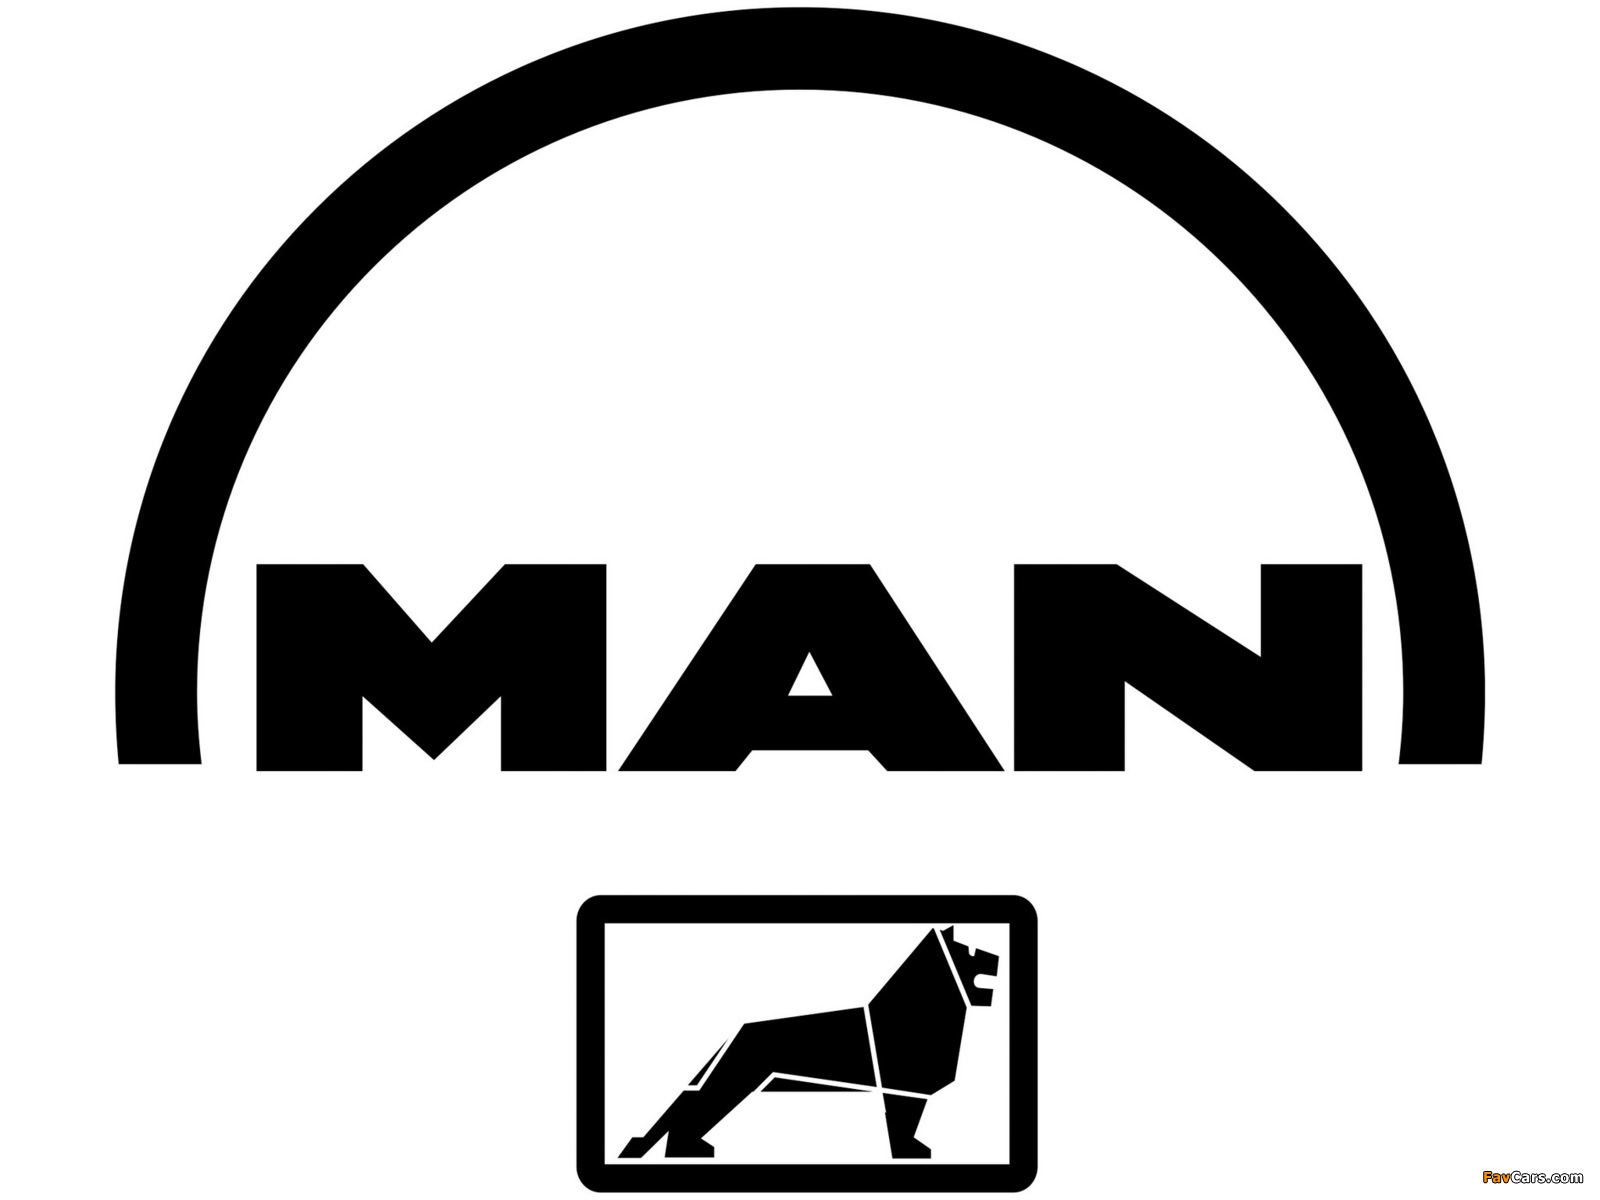 MAN images (1600 x 1200)